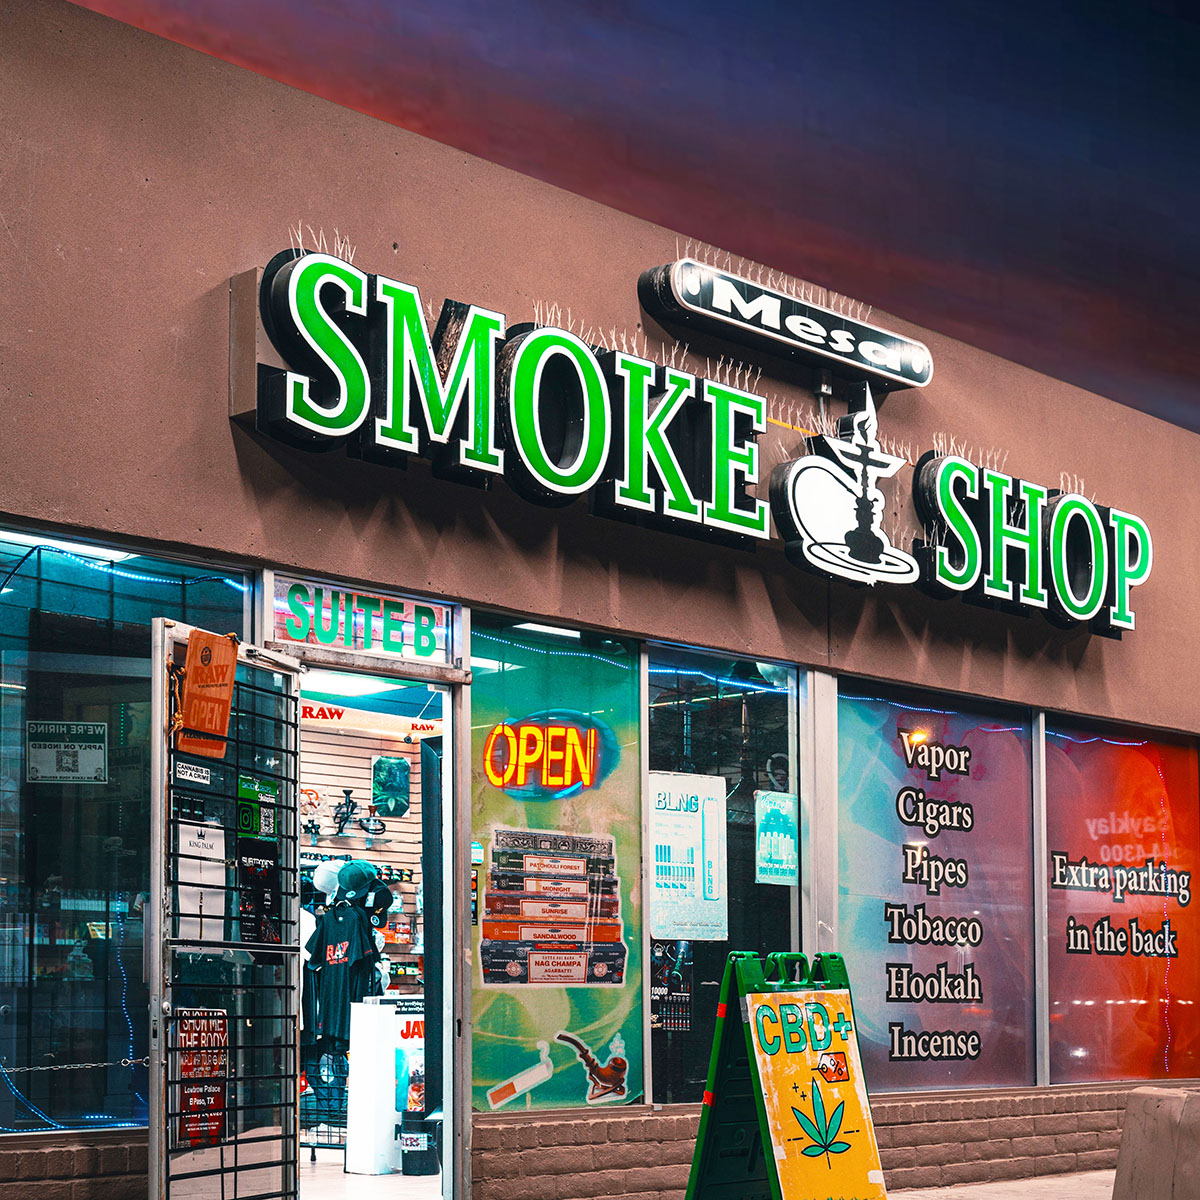 Mesa Smoke Shop - 4300 N Mesa St #B, El Paso, TX 79902 near me